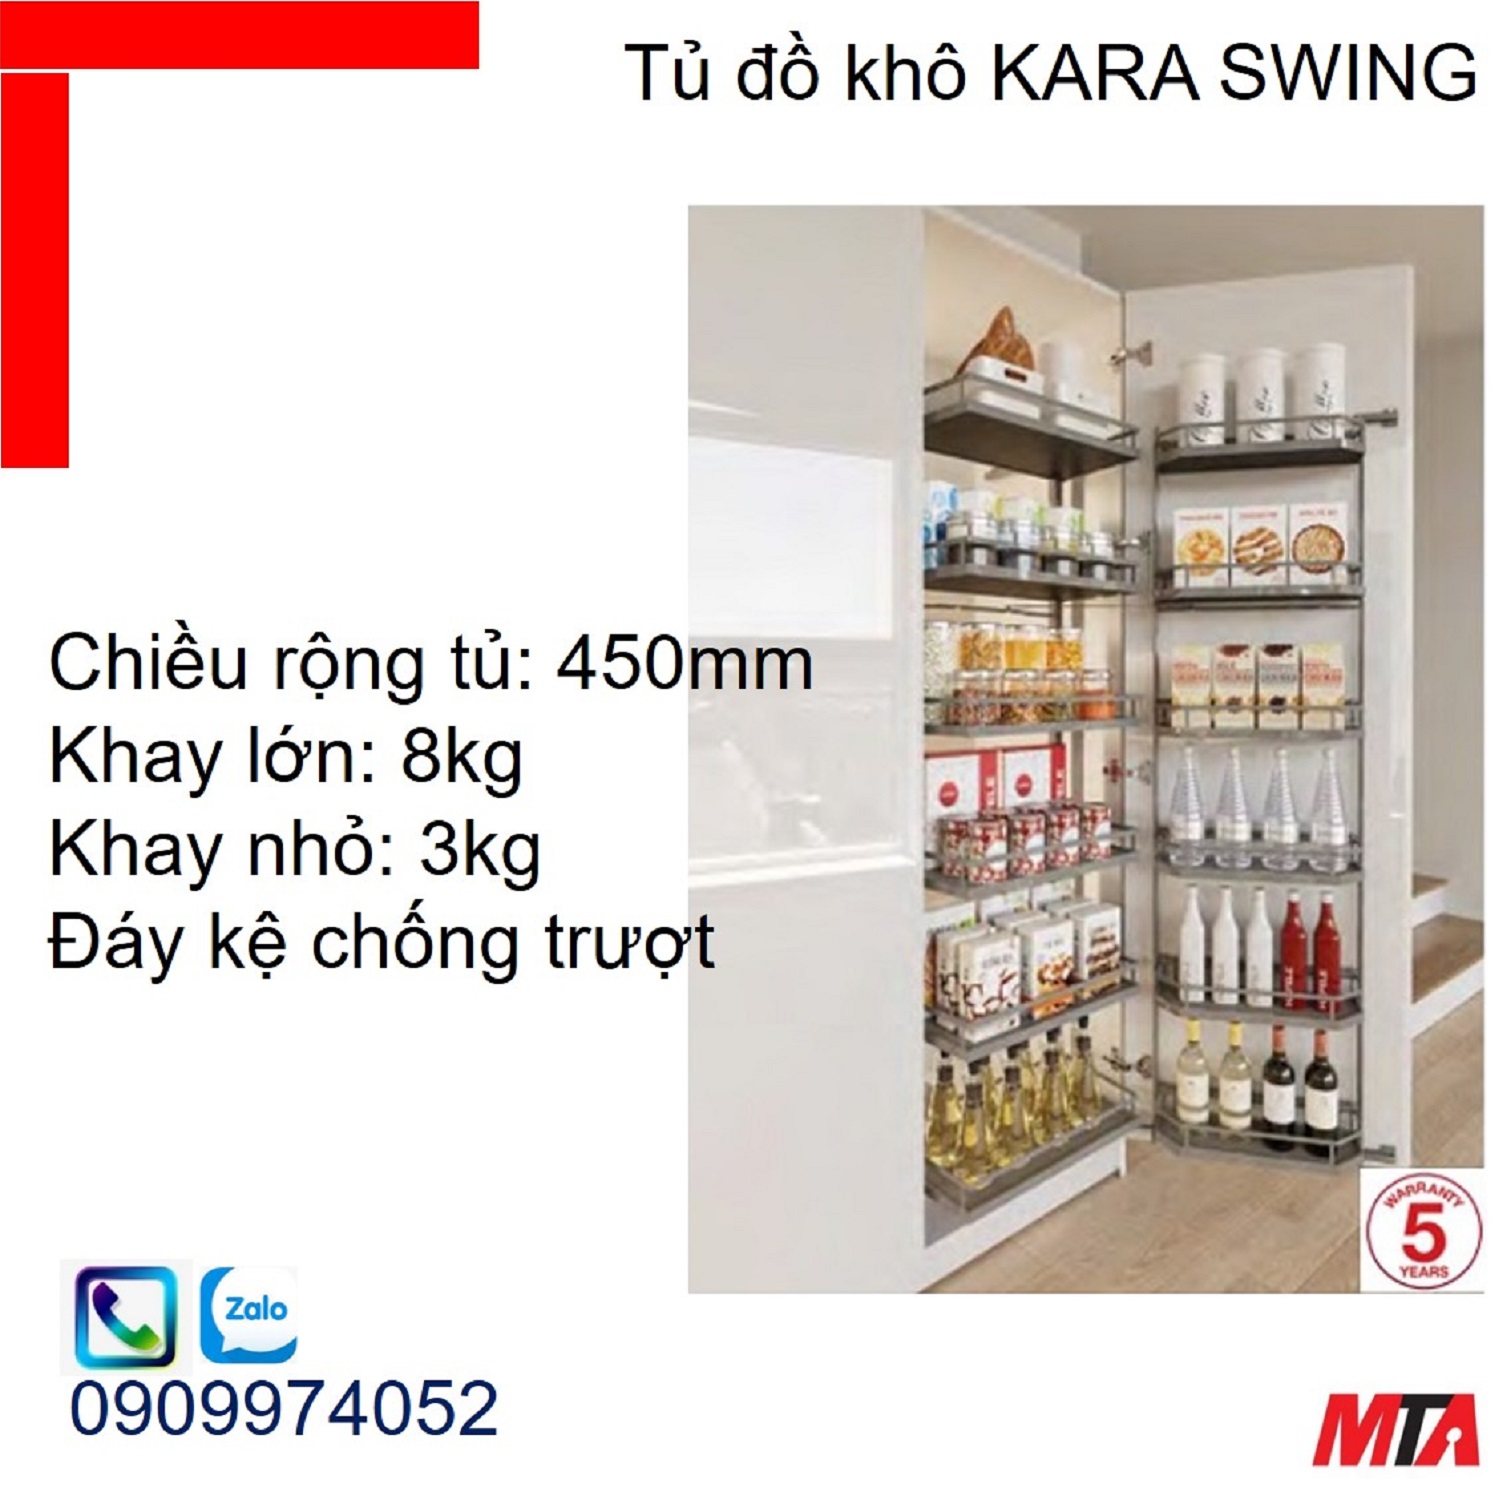 Phụ kiện tủ bếp KOSMO KARA SWING 548.65.842 tủ rộng 450mm